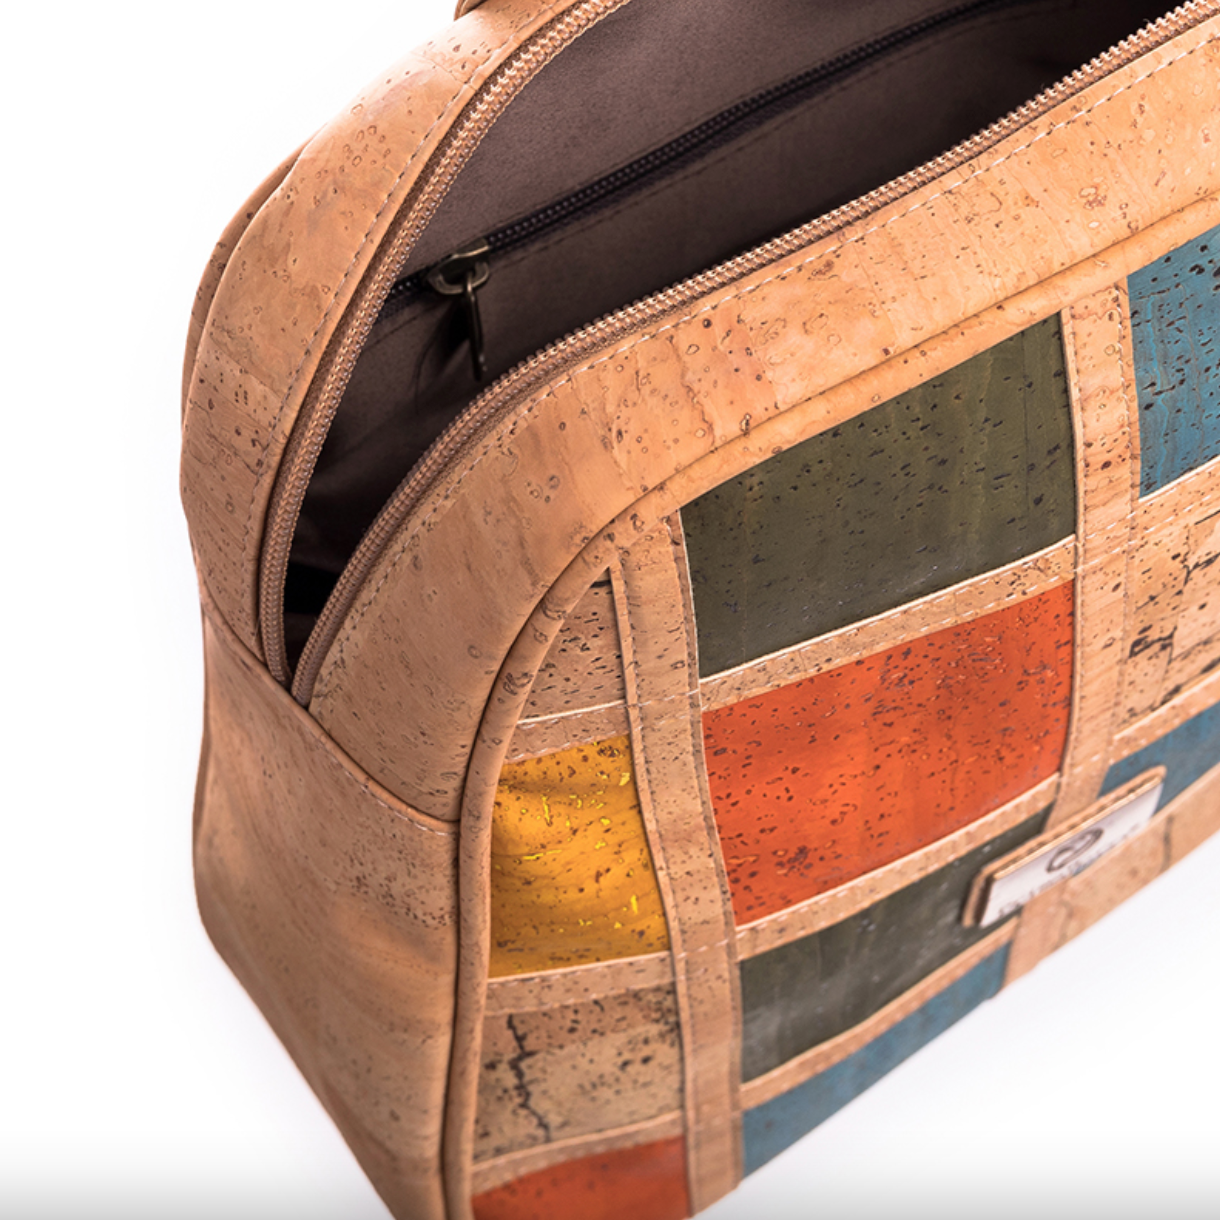 Diversity Cork Crossbody Bag: bolsa sustentável e elegante feita de cortiça portuguesa premium